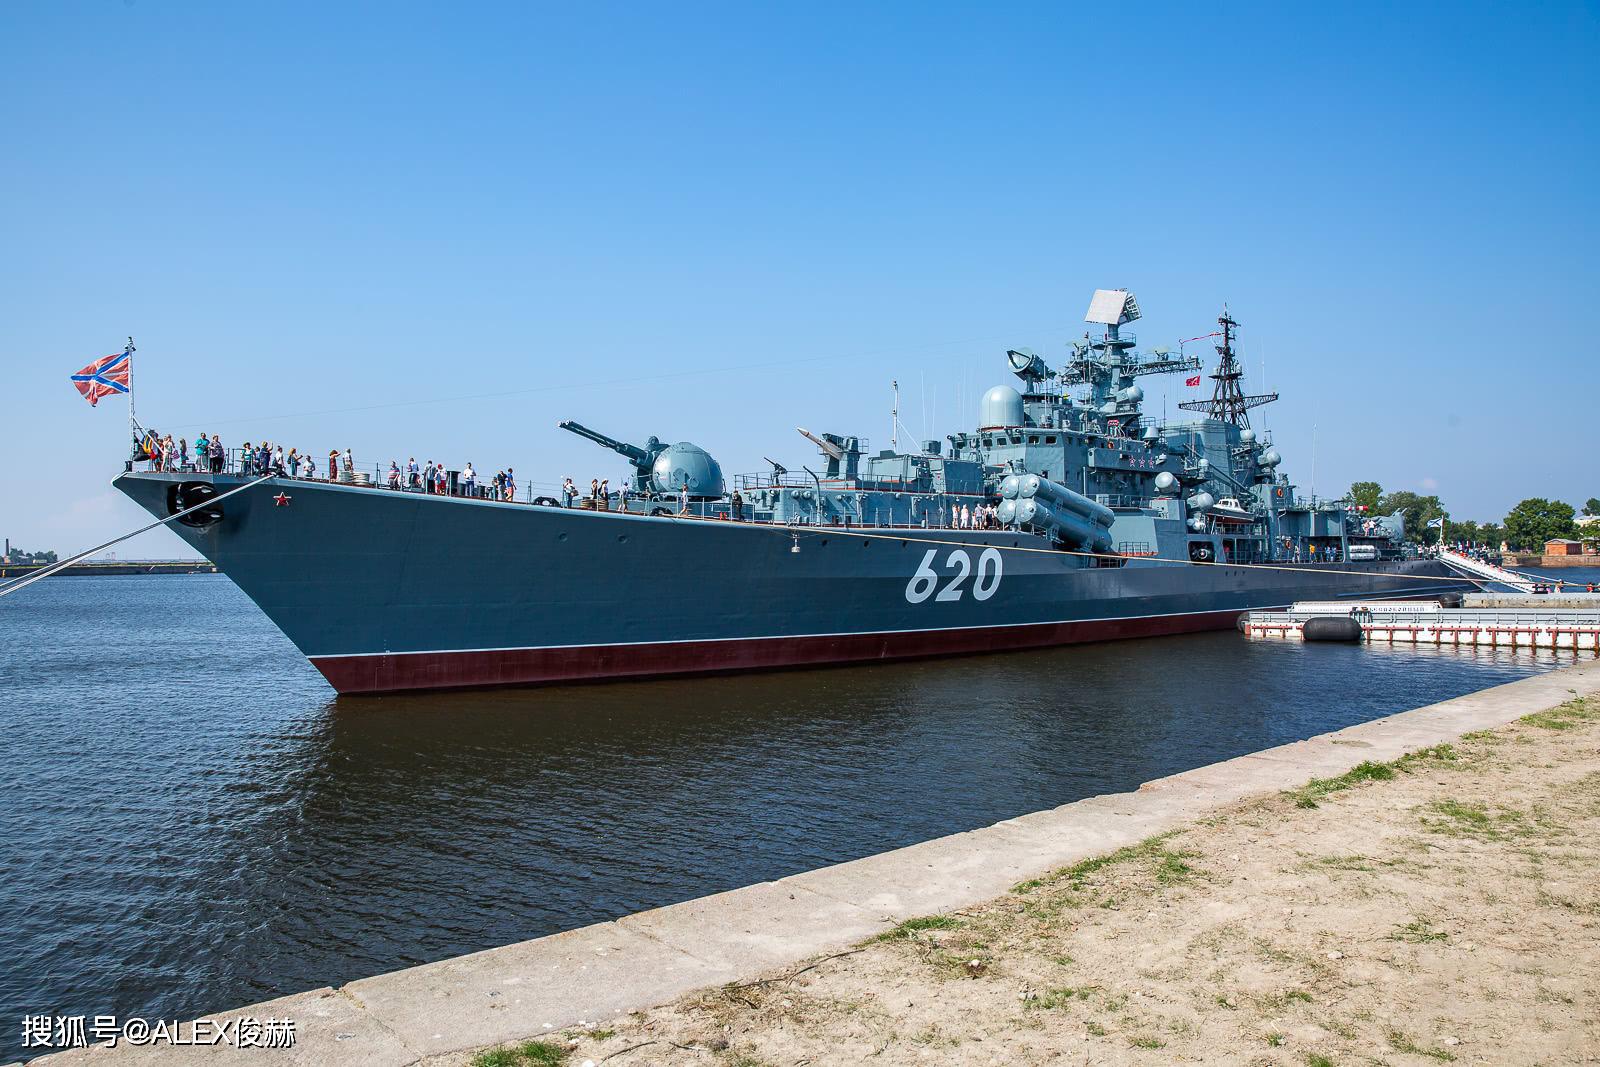 现代级驱逐舰也就是指前苏联956型驱逐舰,首艘于1976年开工建造,1978